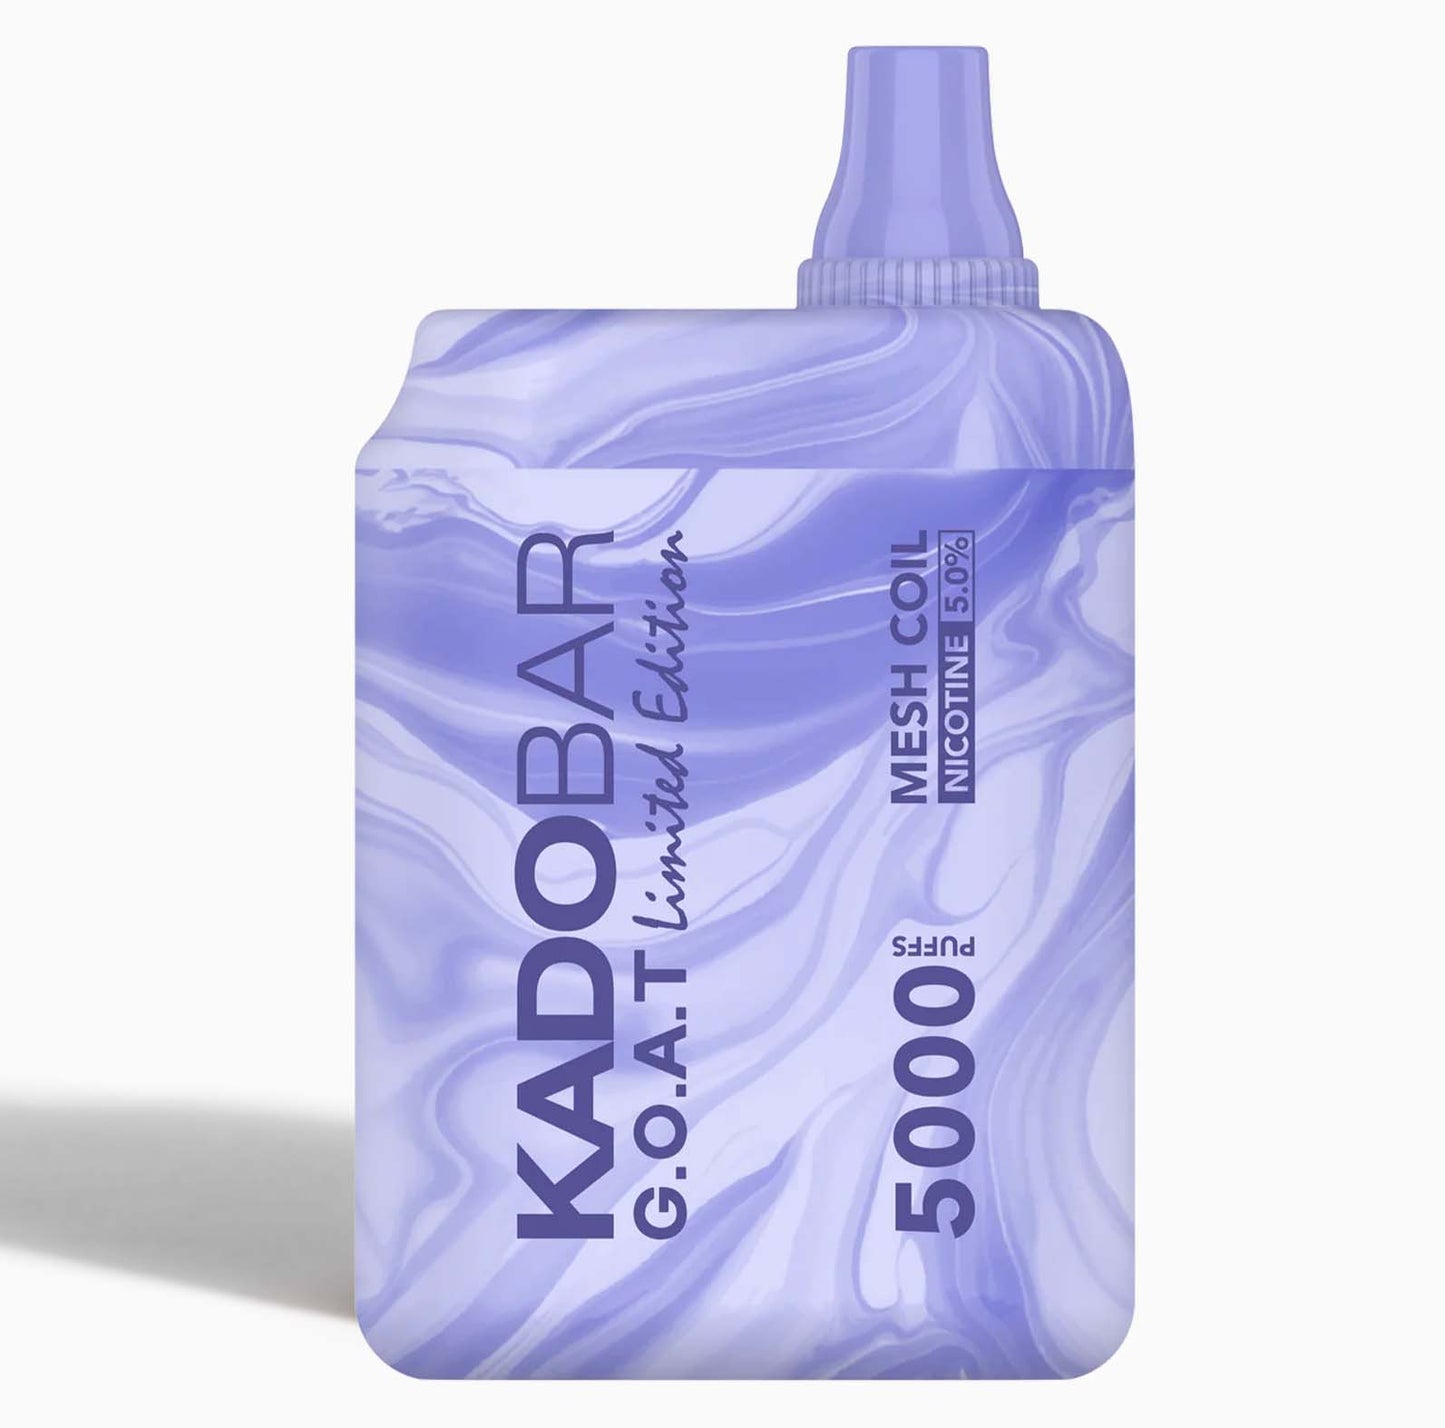 Kado Bar 5000 - Blueberry Mint Goat